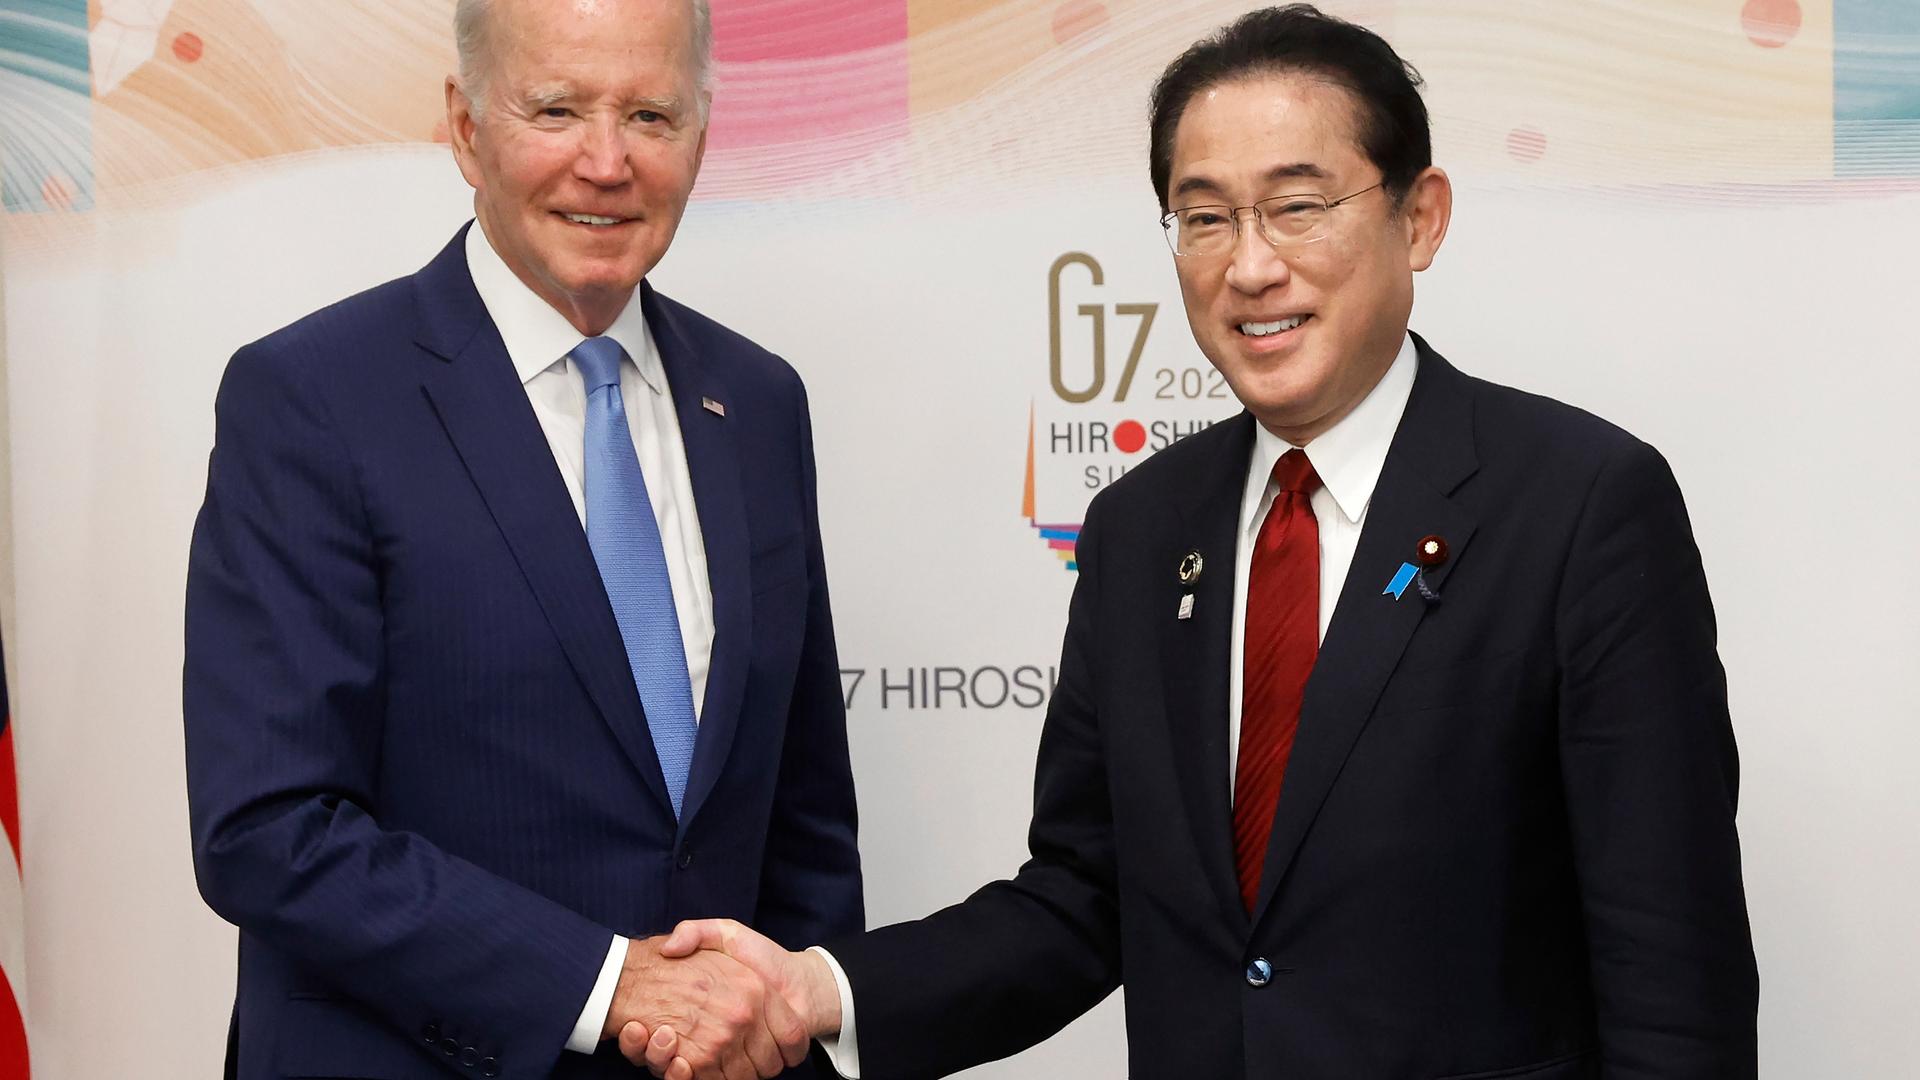 US-Präsident Joe Biden und der japanische Ministerpräsident Fumio Kishida stehen nebeneinander und geben sich die Hand. Sie lächeln in die Kamera. Im Hintergrund ist an einer Wand das Logo des G-7-Treffens zu sehen.